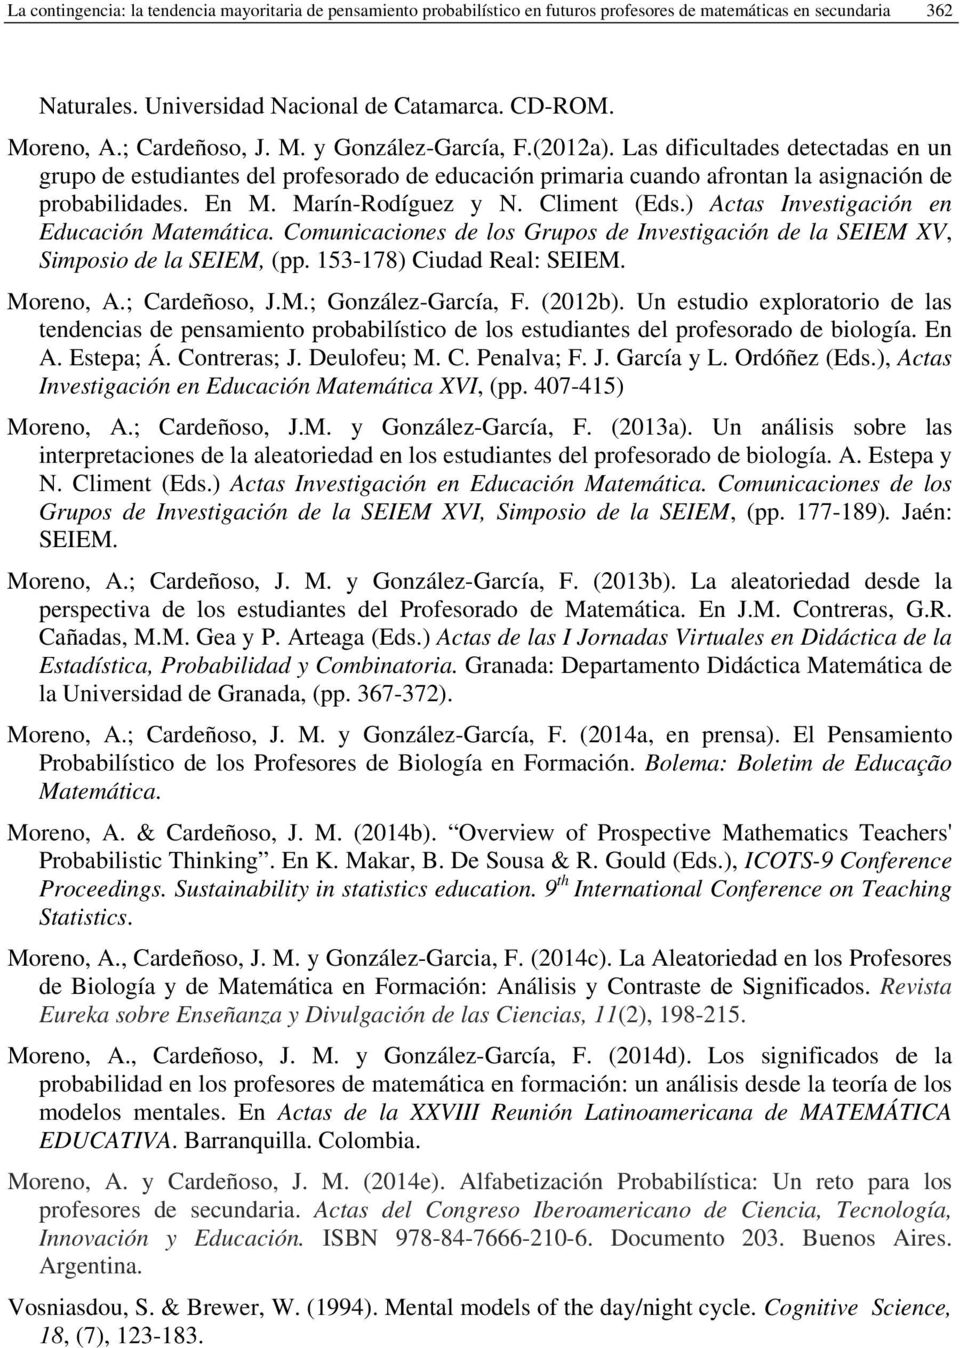 Marín-Rodíguez y N. Climent (Eds.) Actas Investigación en Educación Matemática. Comunicaciones de los Grupos de Investigación de la SEIEM XV, Simposio de la SEIEM, (pp. 153-178) Ciudad Real: SEIEM.